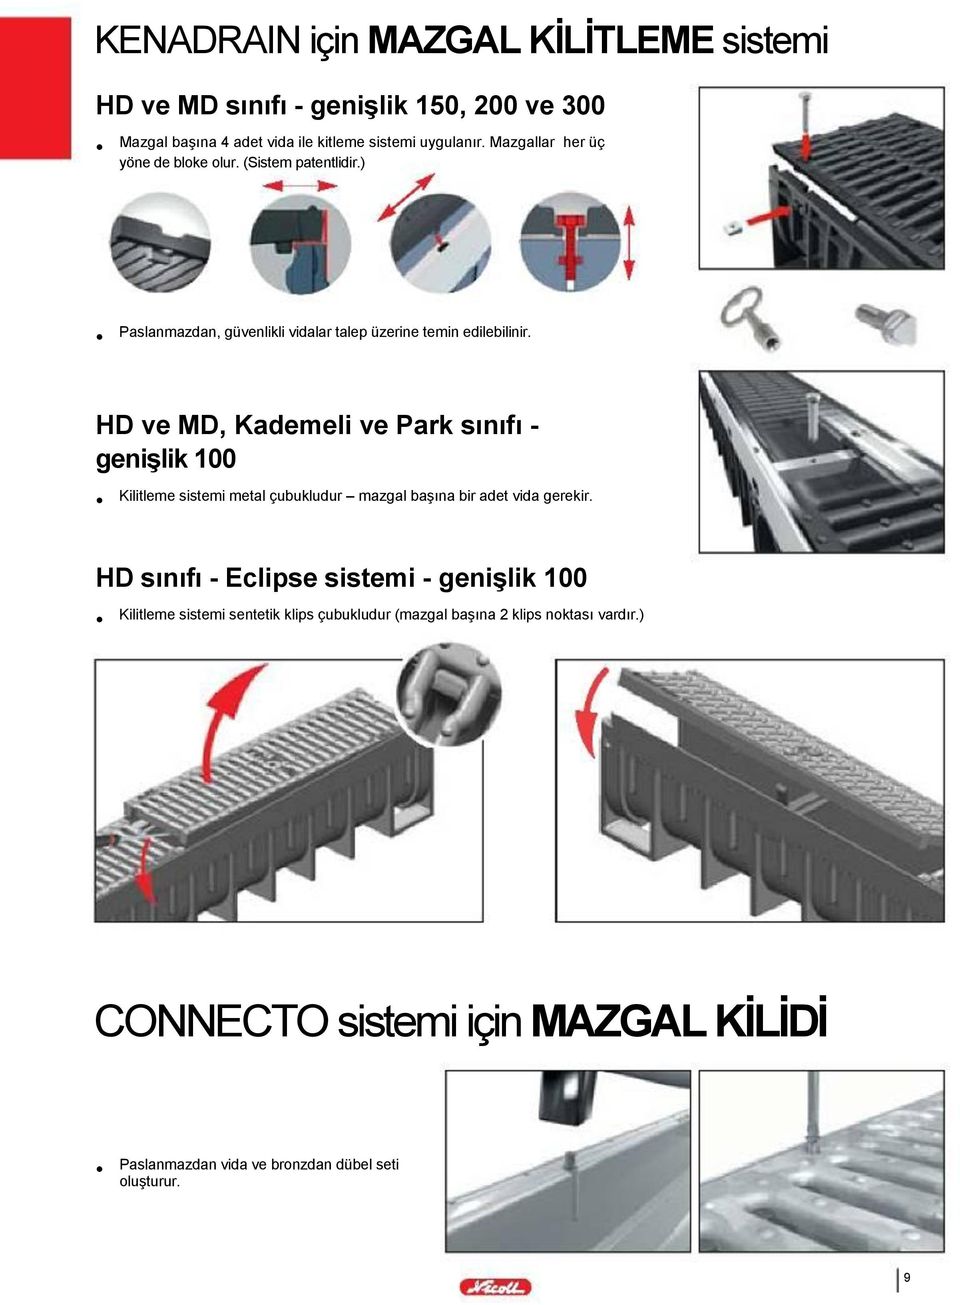 HD ve MD, Kademeli ve Park sınıfı - genişlik 100 Kilitleme sistemi metal çubukludur mazgal başına bir adet vida gerekir.